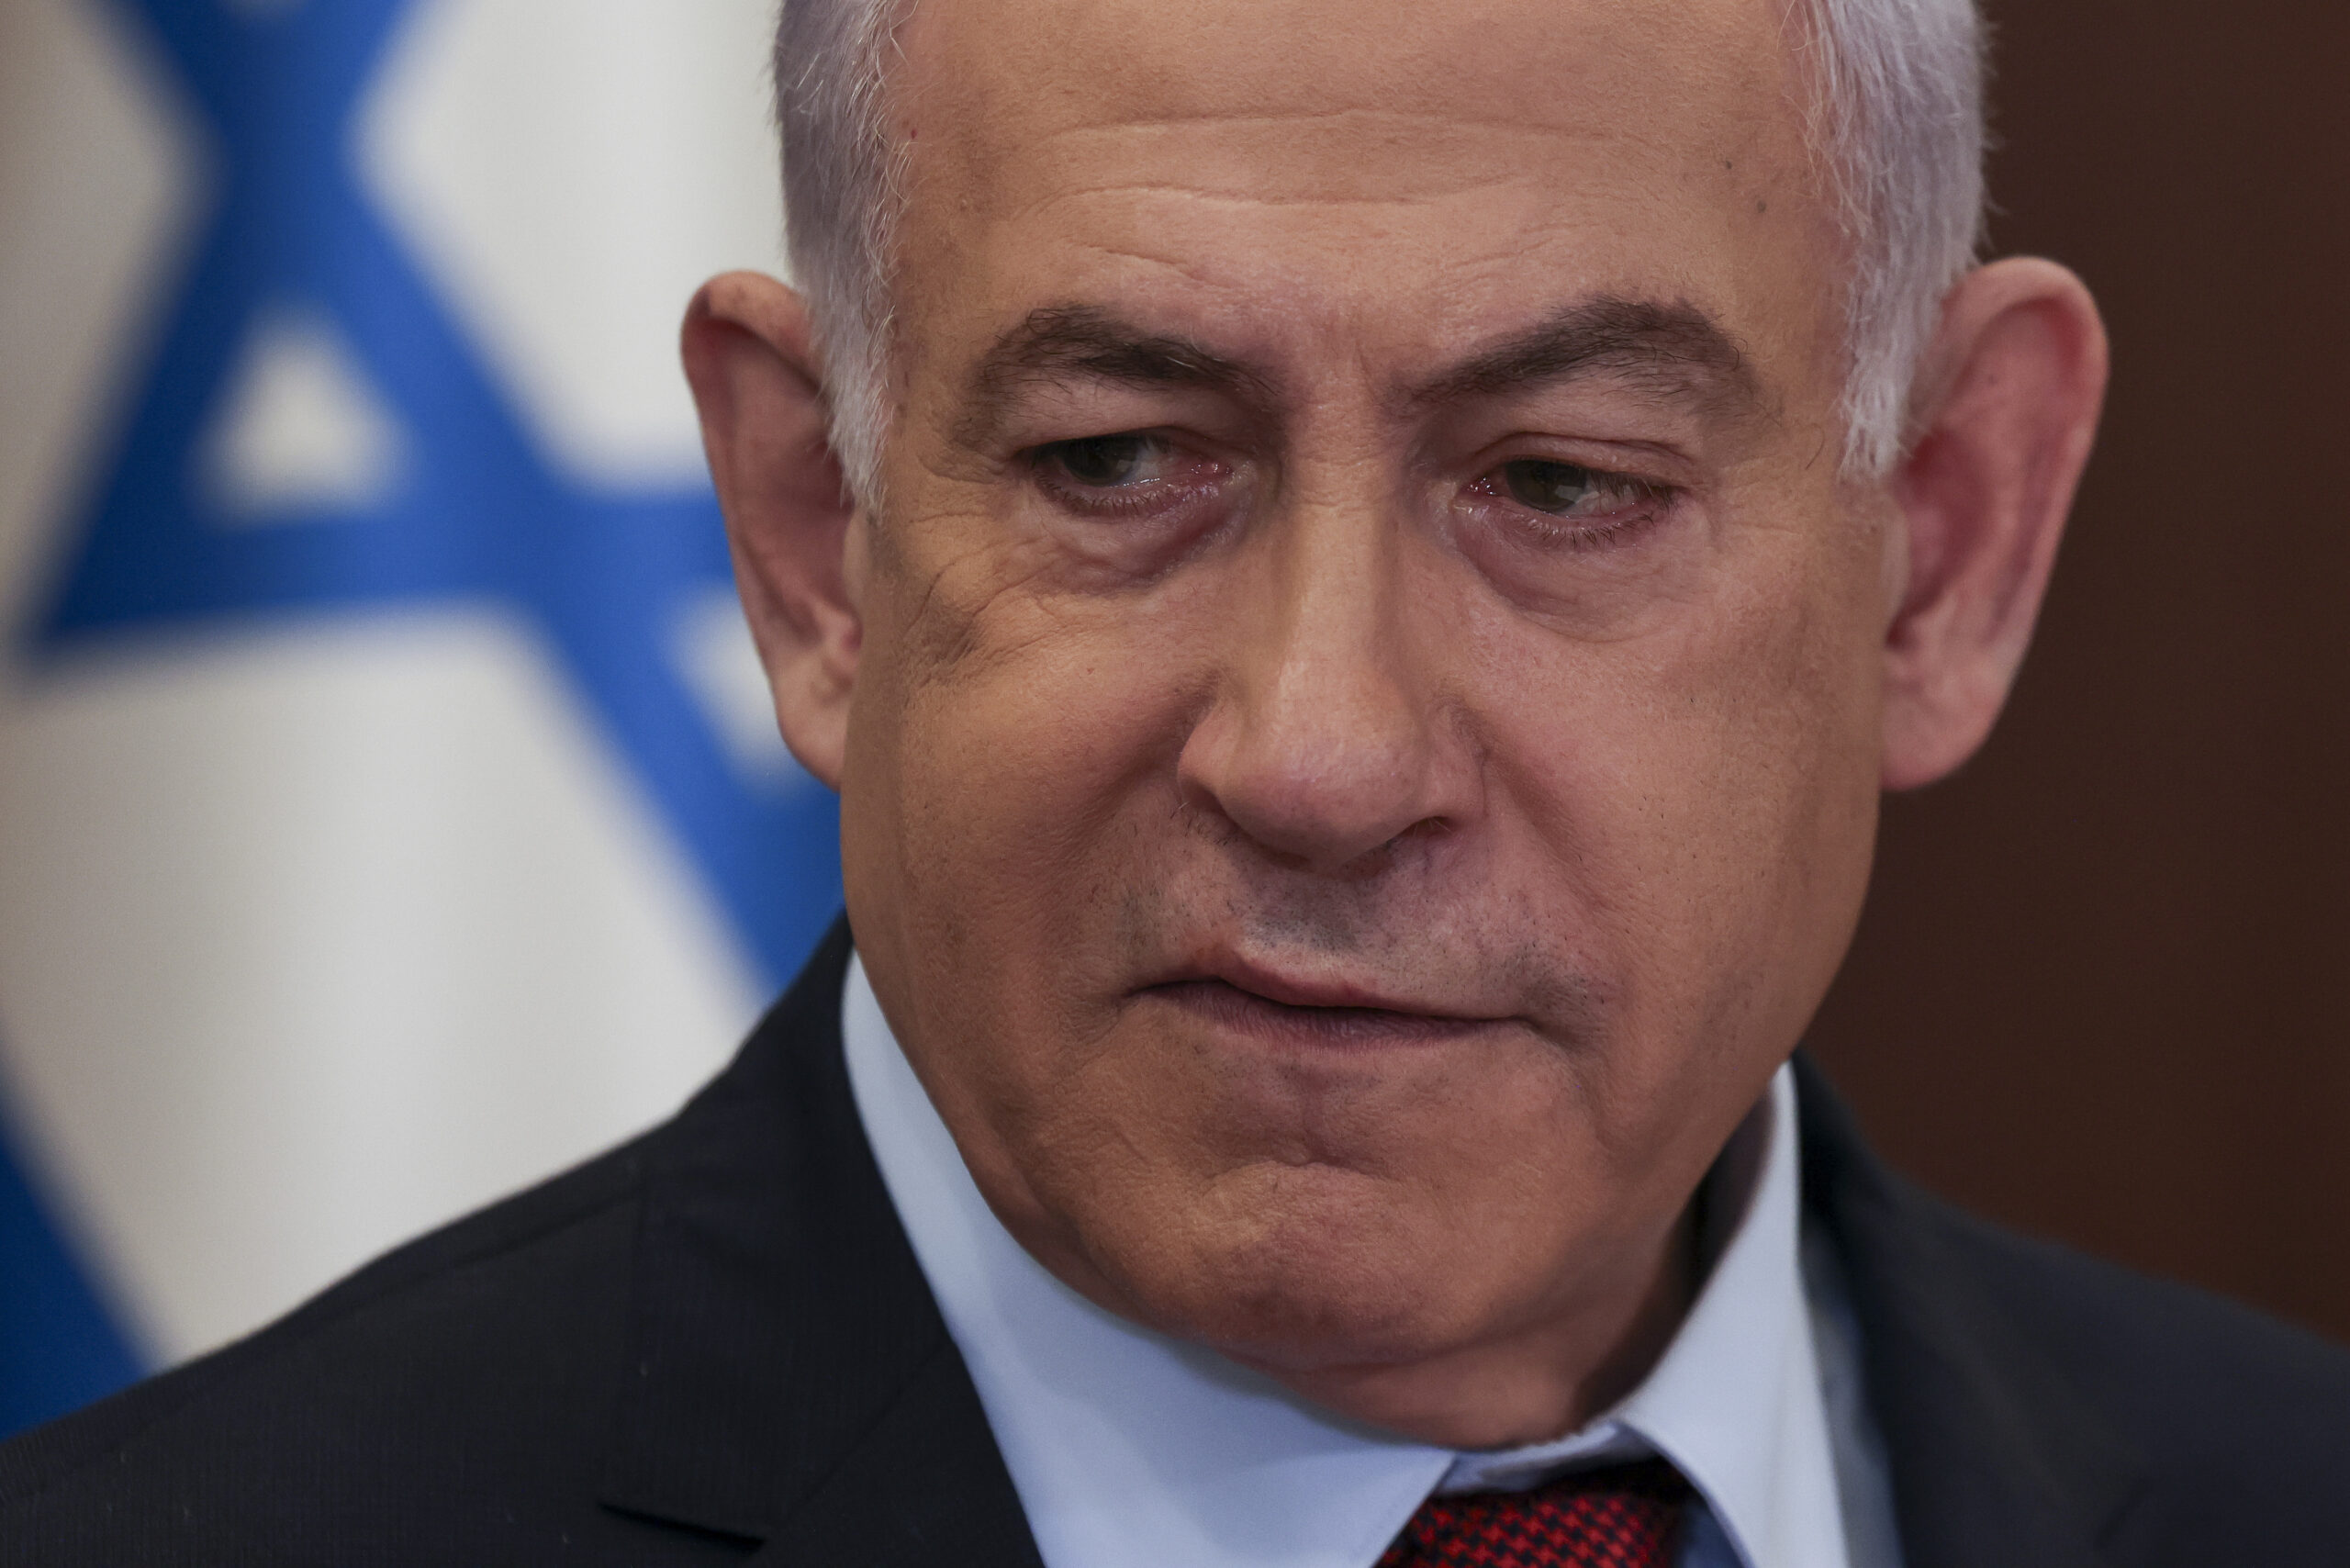 Netanyahu, l'arrogante: "Non accetterò mai l'autorità della Corte penale internazionale"